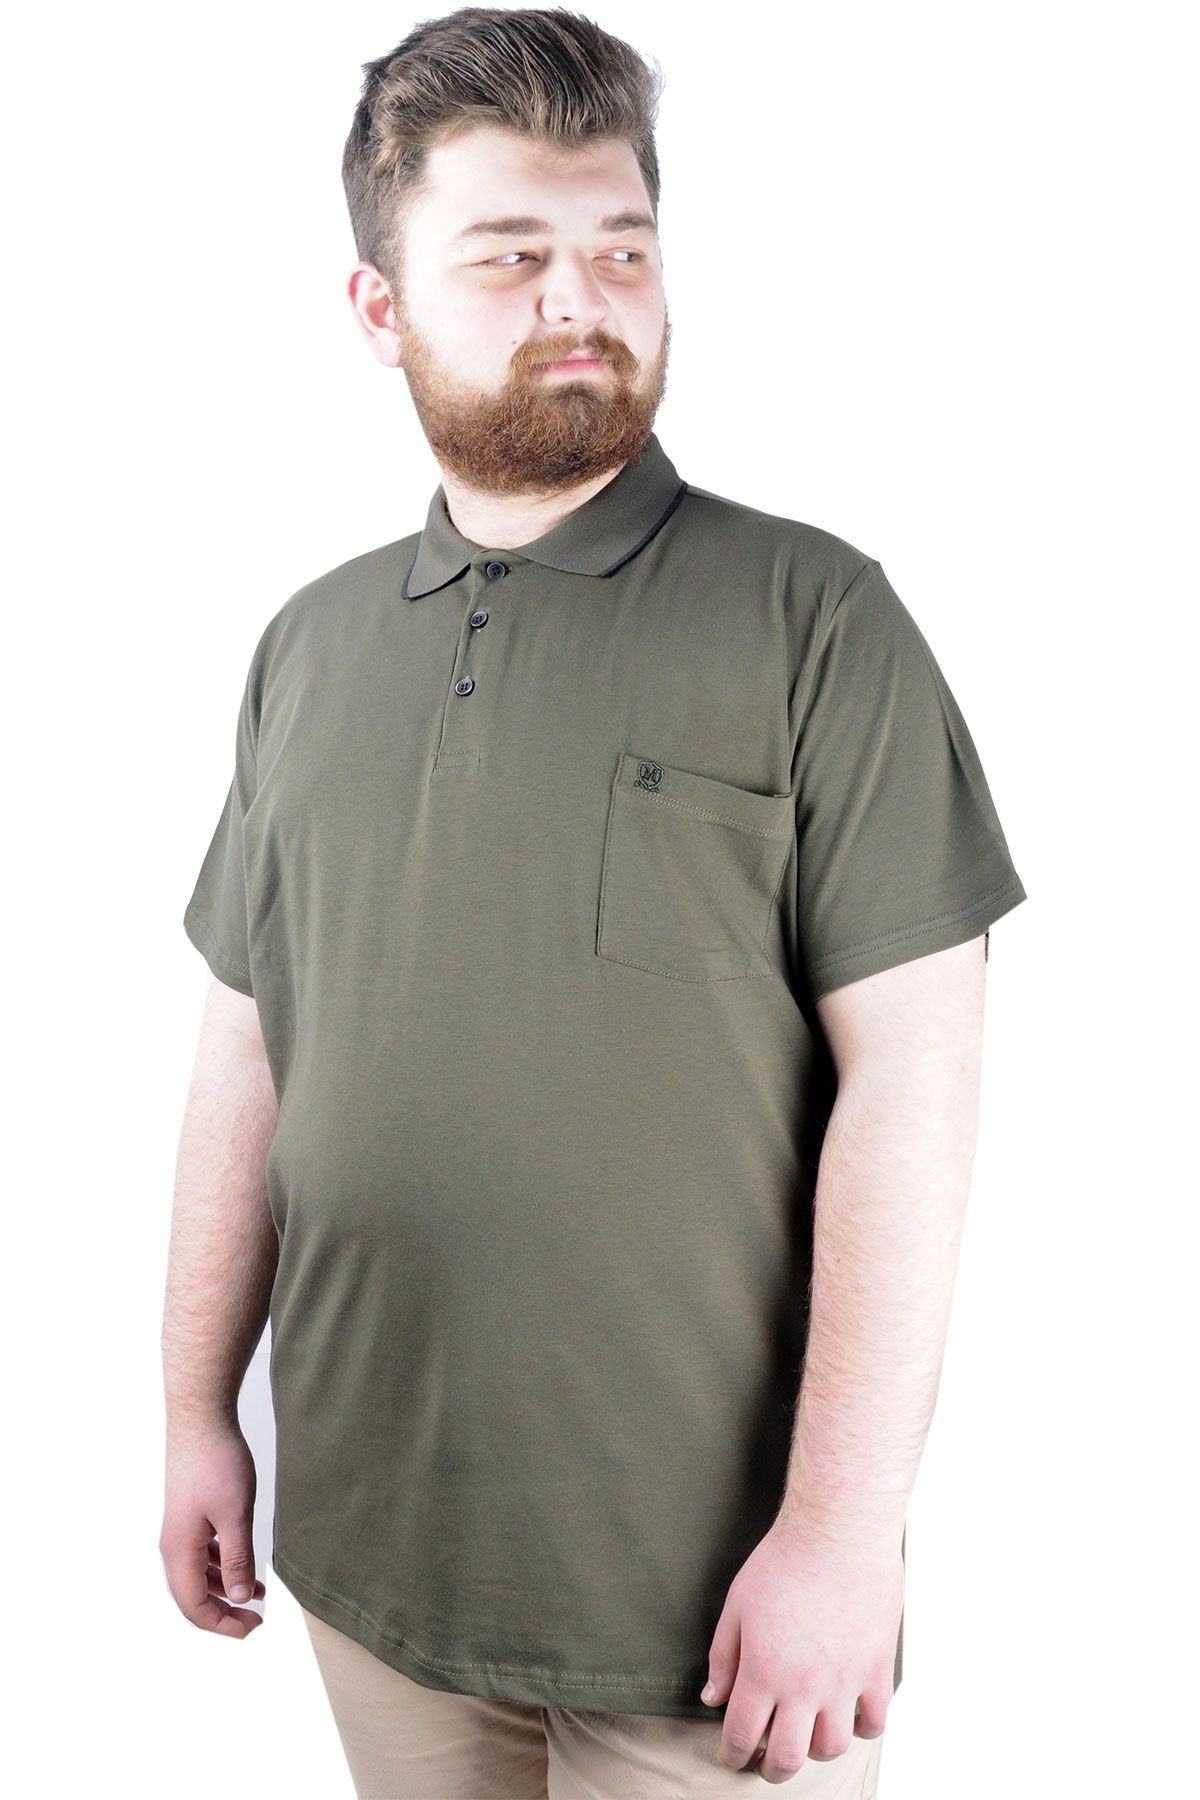 Modexl Mode Xl Büyük Beden T Shirt Polo Likralı Süprem Cepli 21558 Haki